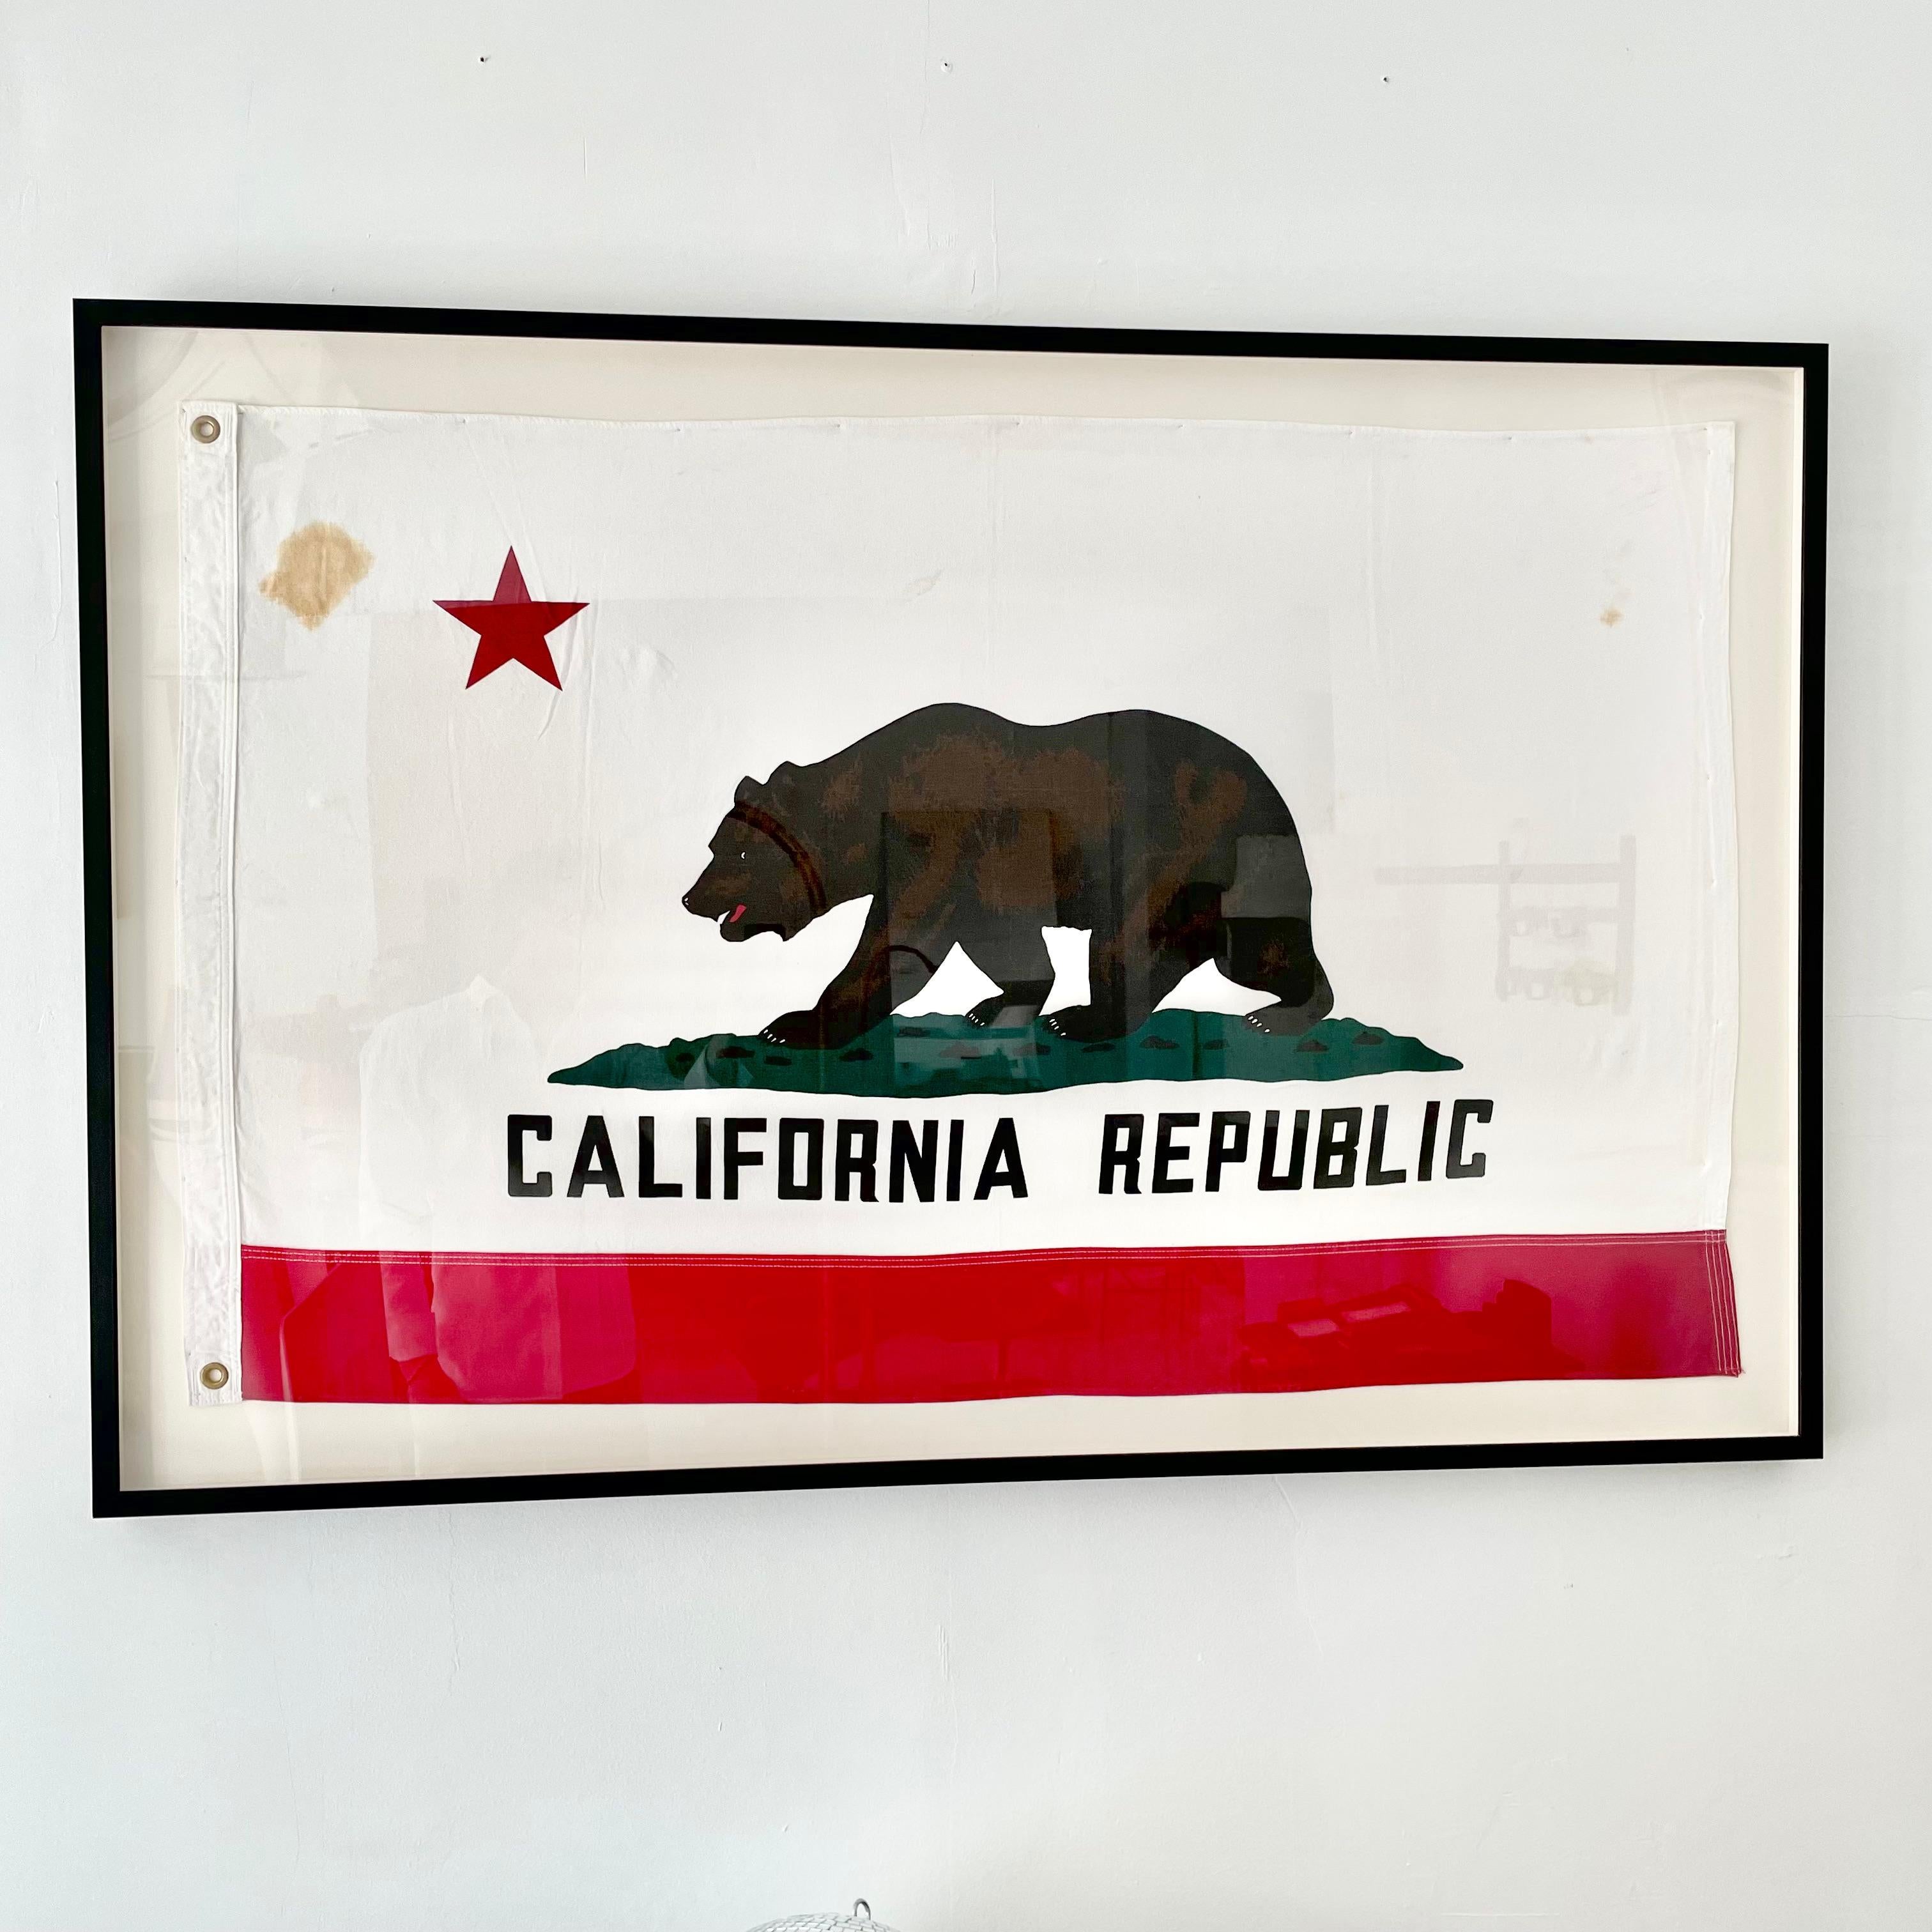 Vintage California Republic Flagge aus den 1960er Jahren. Hergestellt aus dicker Baumwolle. Tolle Färbung. Ein lustiges Stück kalifornischer Geschichte. Neu montiert auf einer Schattenbox aus Leinen, mit schwarzem Rahmen und Plexiglas. Fleck oben